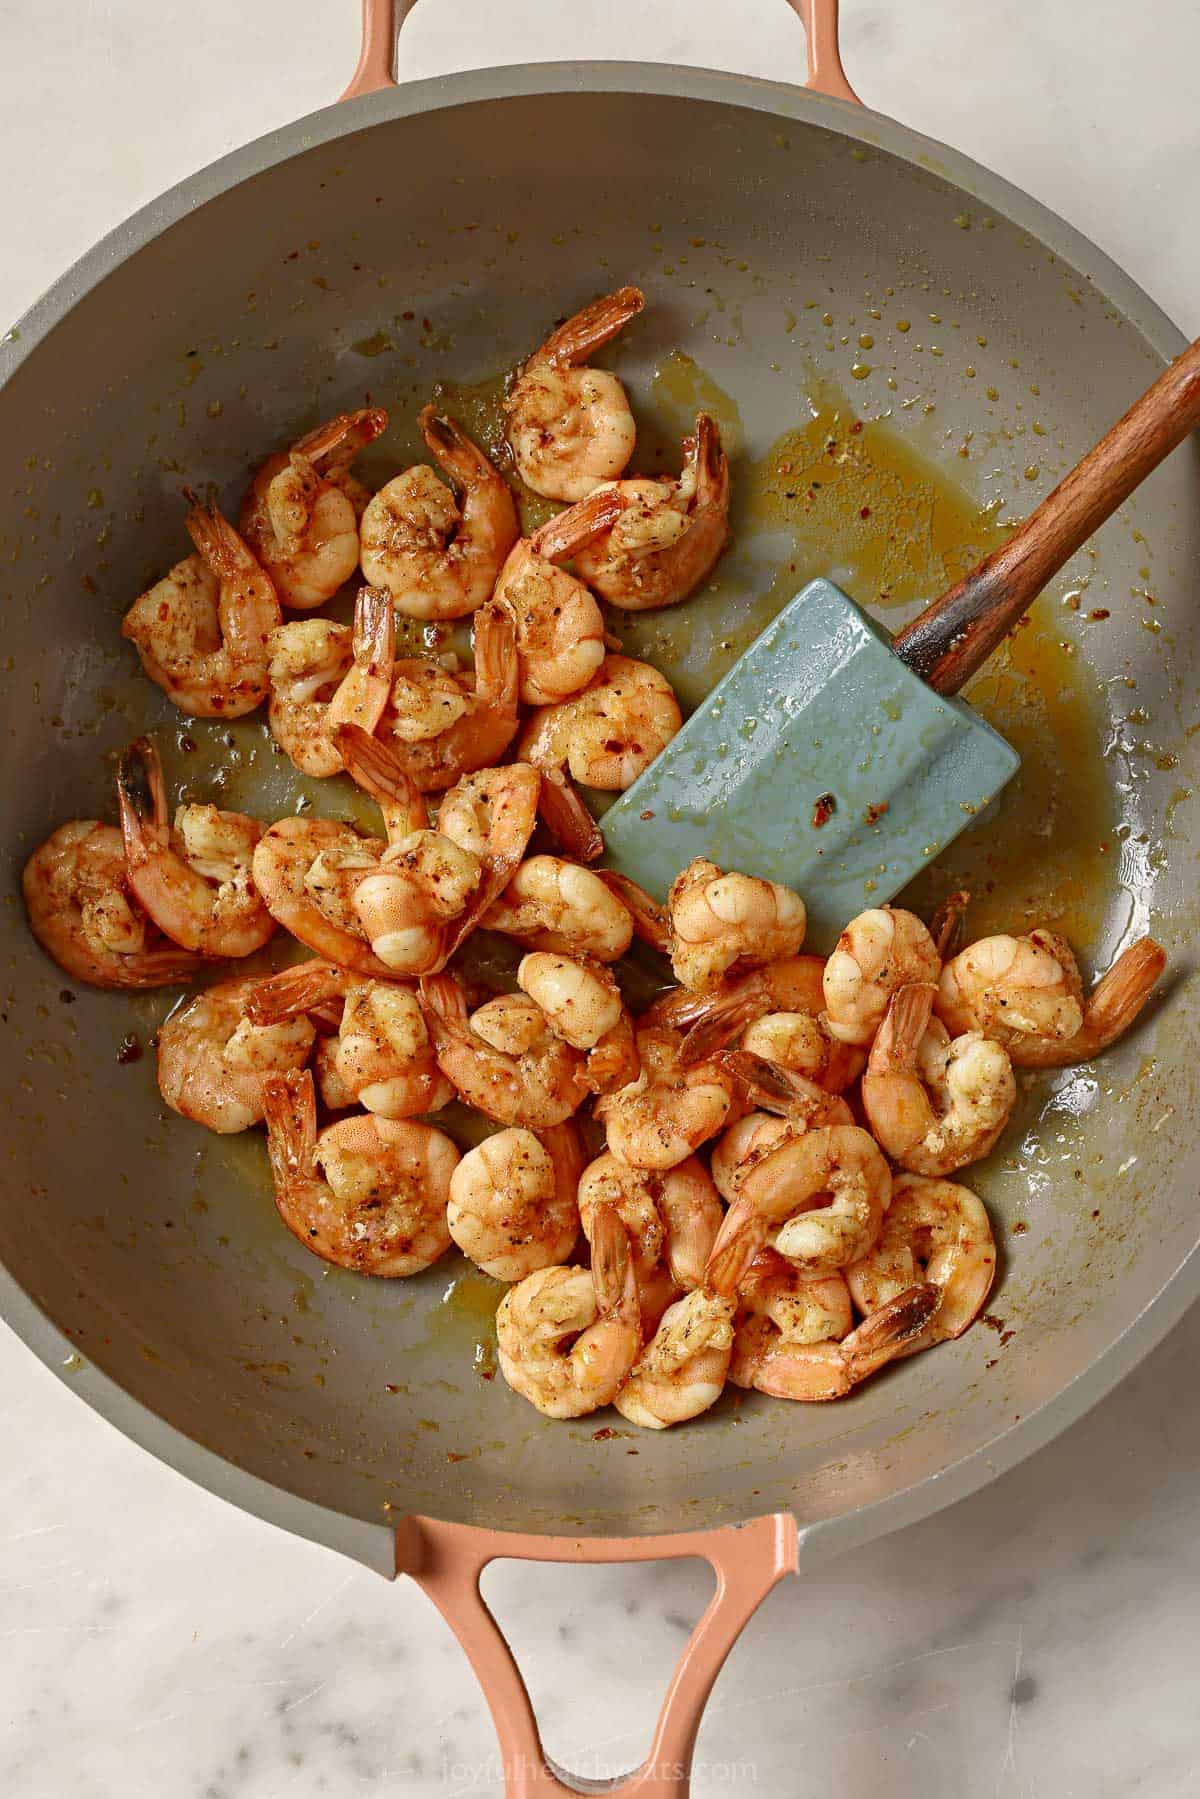 Sautéed shrimp in the pan.